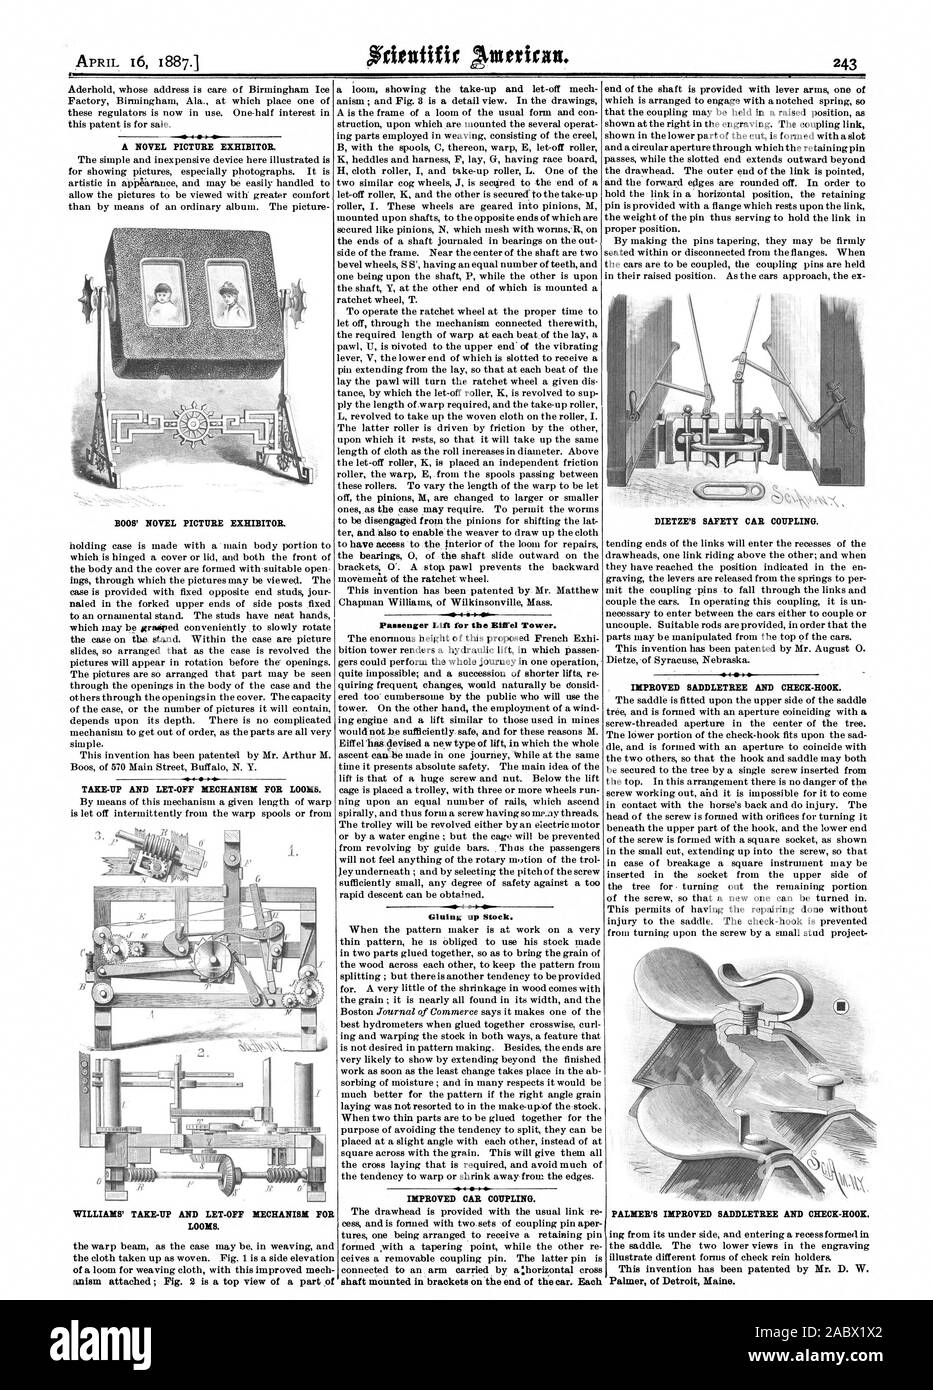 Un roman photo exposant. BOOS' ROMAN PHOTO EXPOSANT. WILLIAMS' et laissez-le mécanisme pour métiers à tisser. Ascenseur pour la tour Eiffel. Le stock d'encollage. L'amélioration de l'arbre d'accouplement. VOITURE monté entre crochets à l'extrémité de la voiture. Chaque DIETZE'S SAFETY-CAR L'accouplement. Palmer de Detroit Maine., Scientific American, 1887-04-16 Banque D'Images